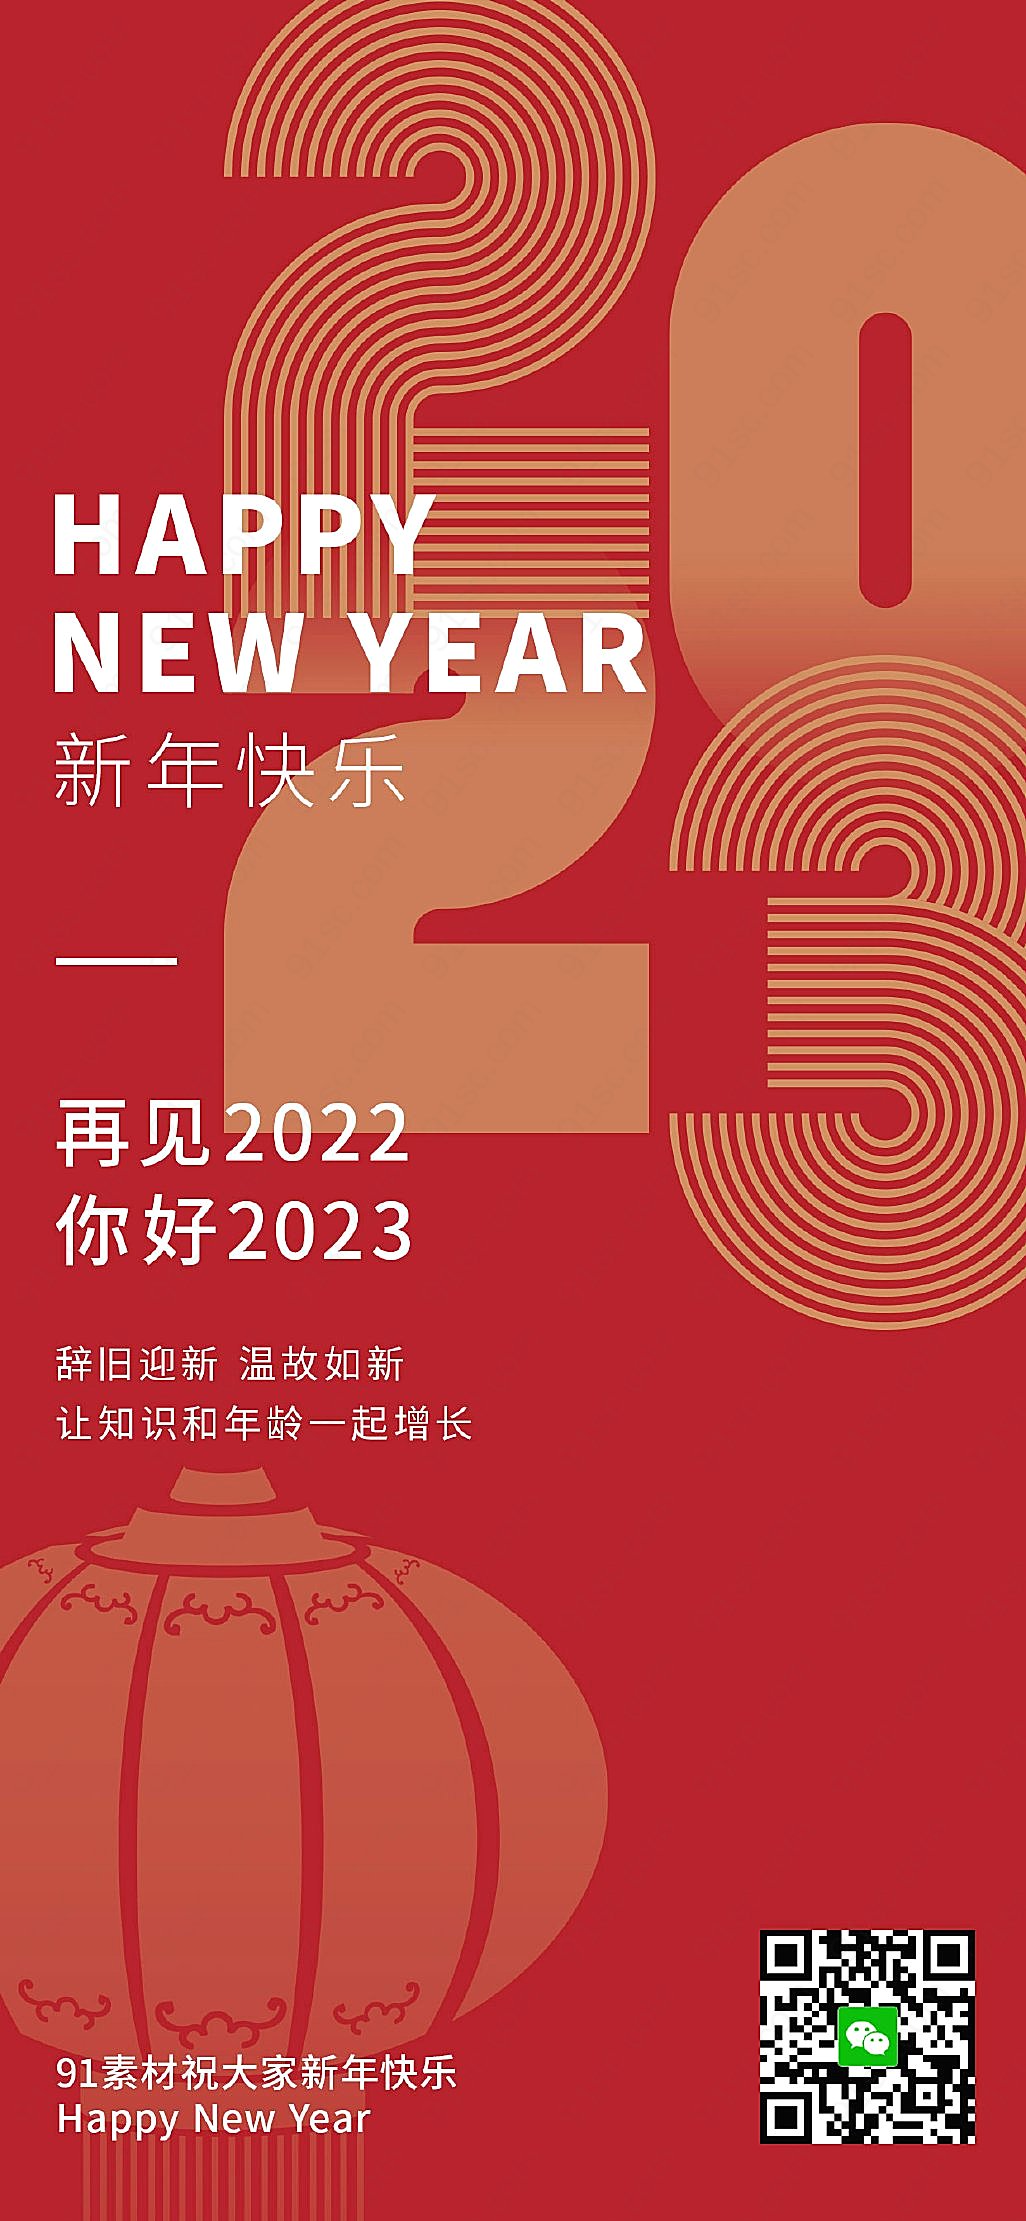 你好2023每日新媒体视觉海报分享手机海报手机营销图新媒体用图下载